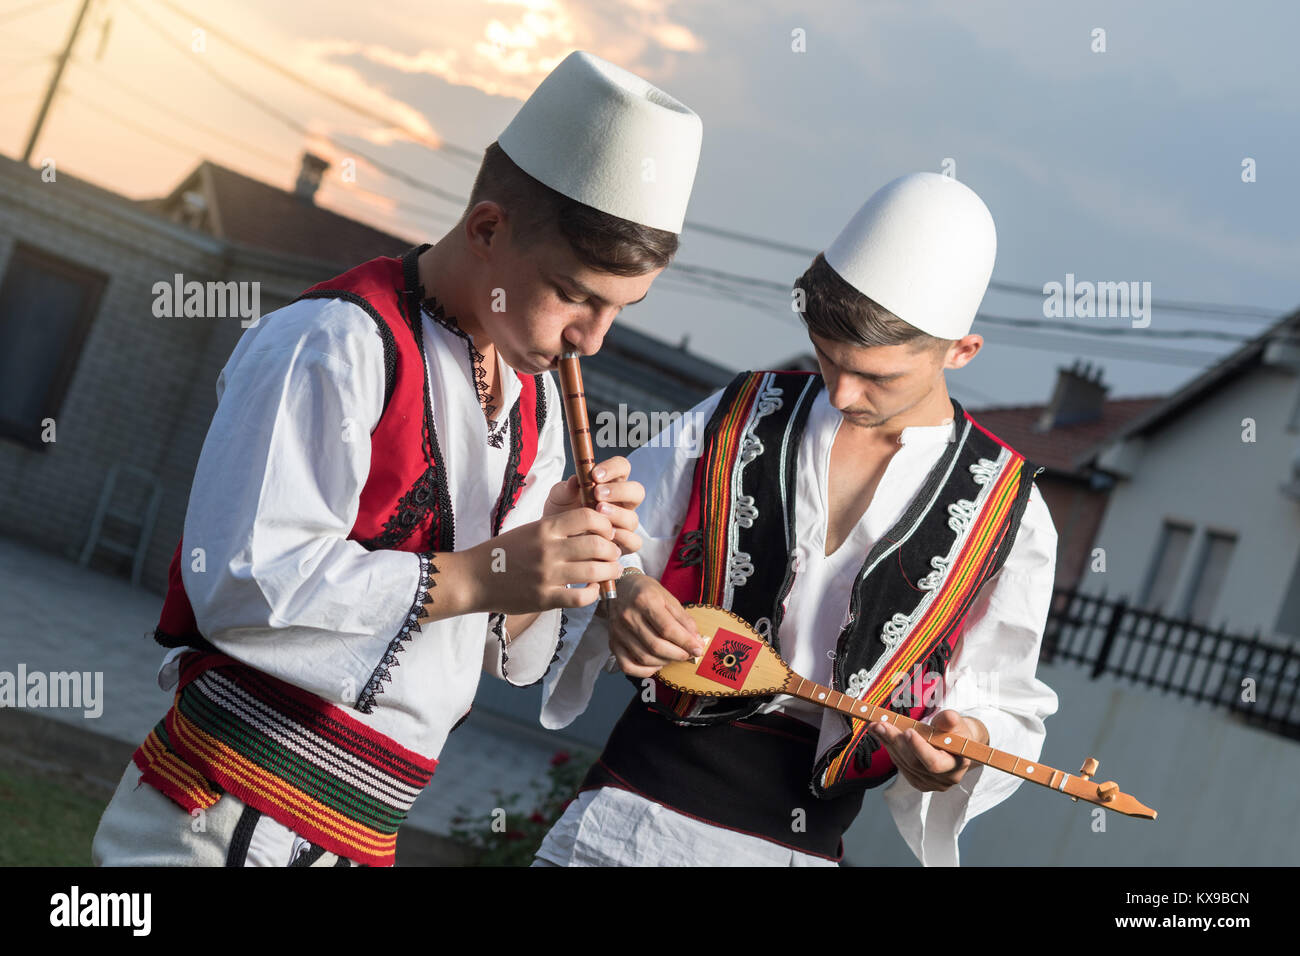 Jugendlich Jungen in der traditionellen albanischen Kostüm spielen Musik mit Flöte und String Instrument in der Abendsonne Stockfoto